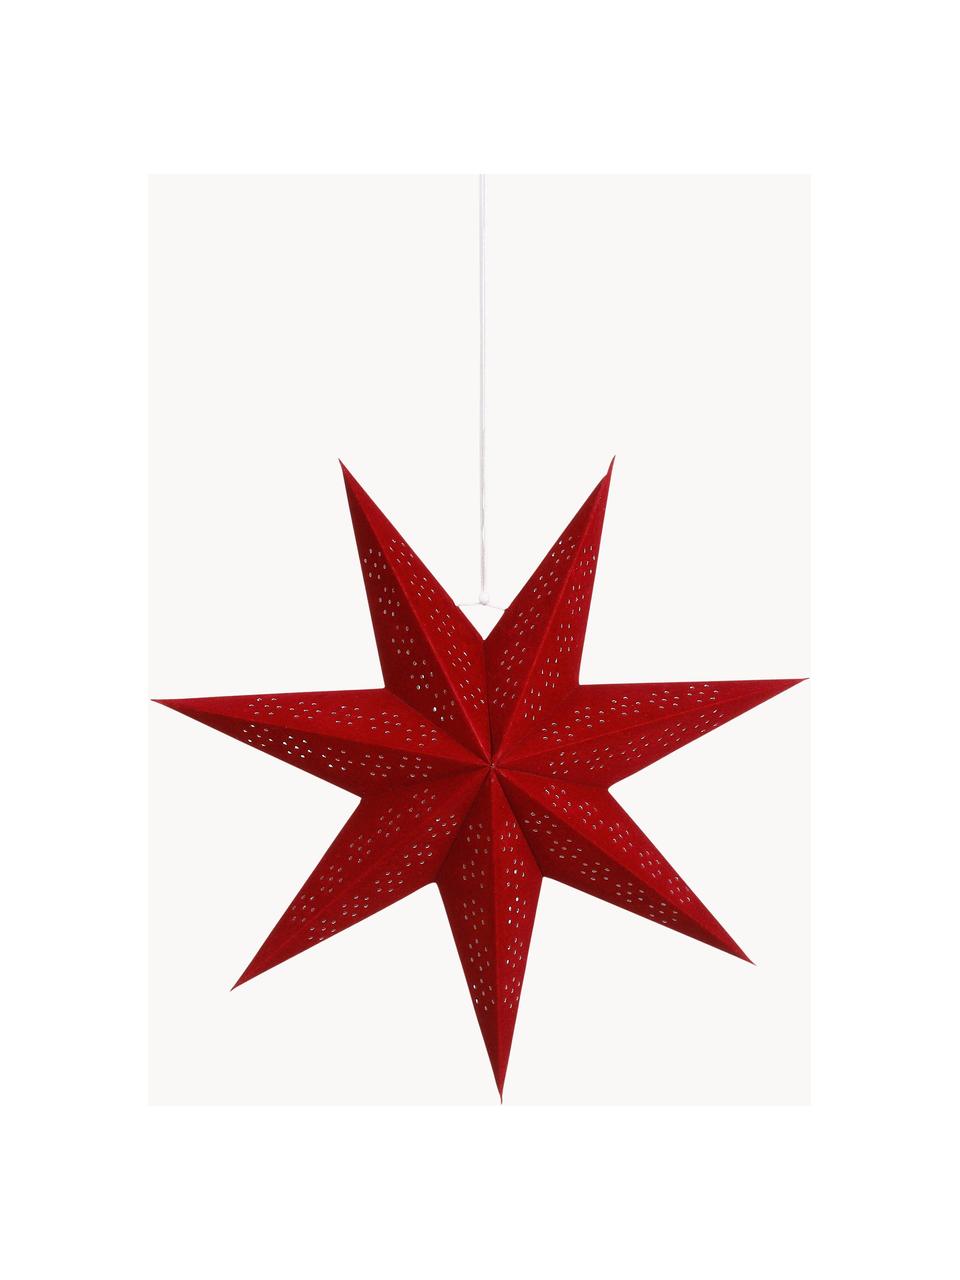 Dekorační hvězda Claudia, Papír, Červená, Ø 45 cm